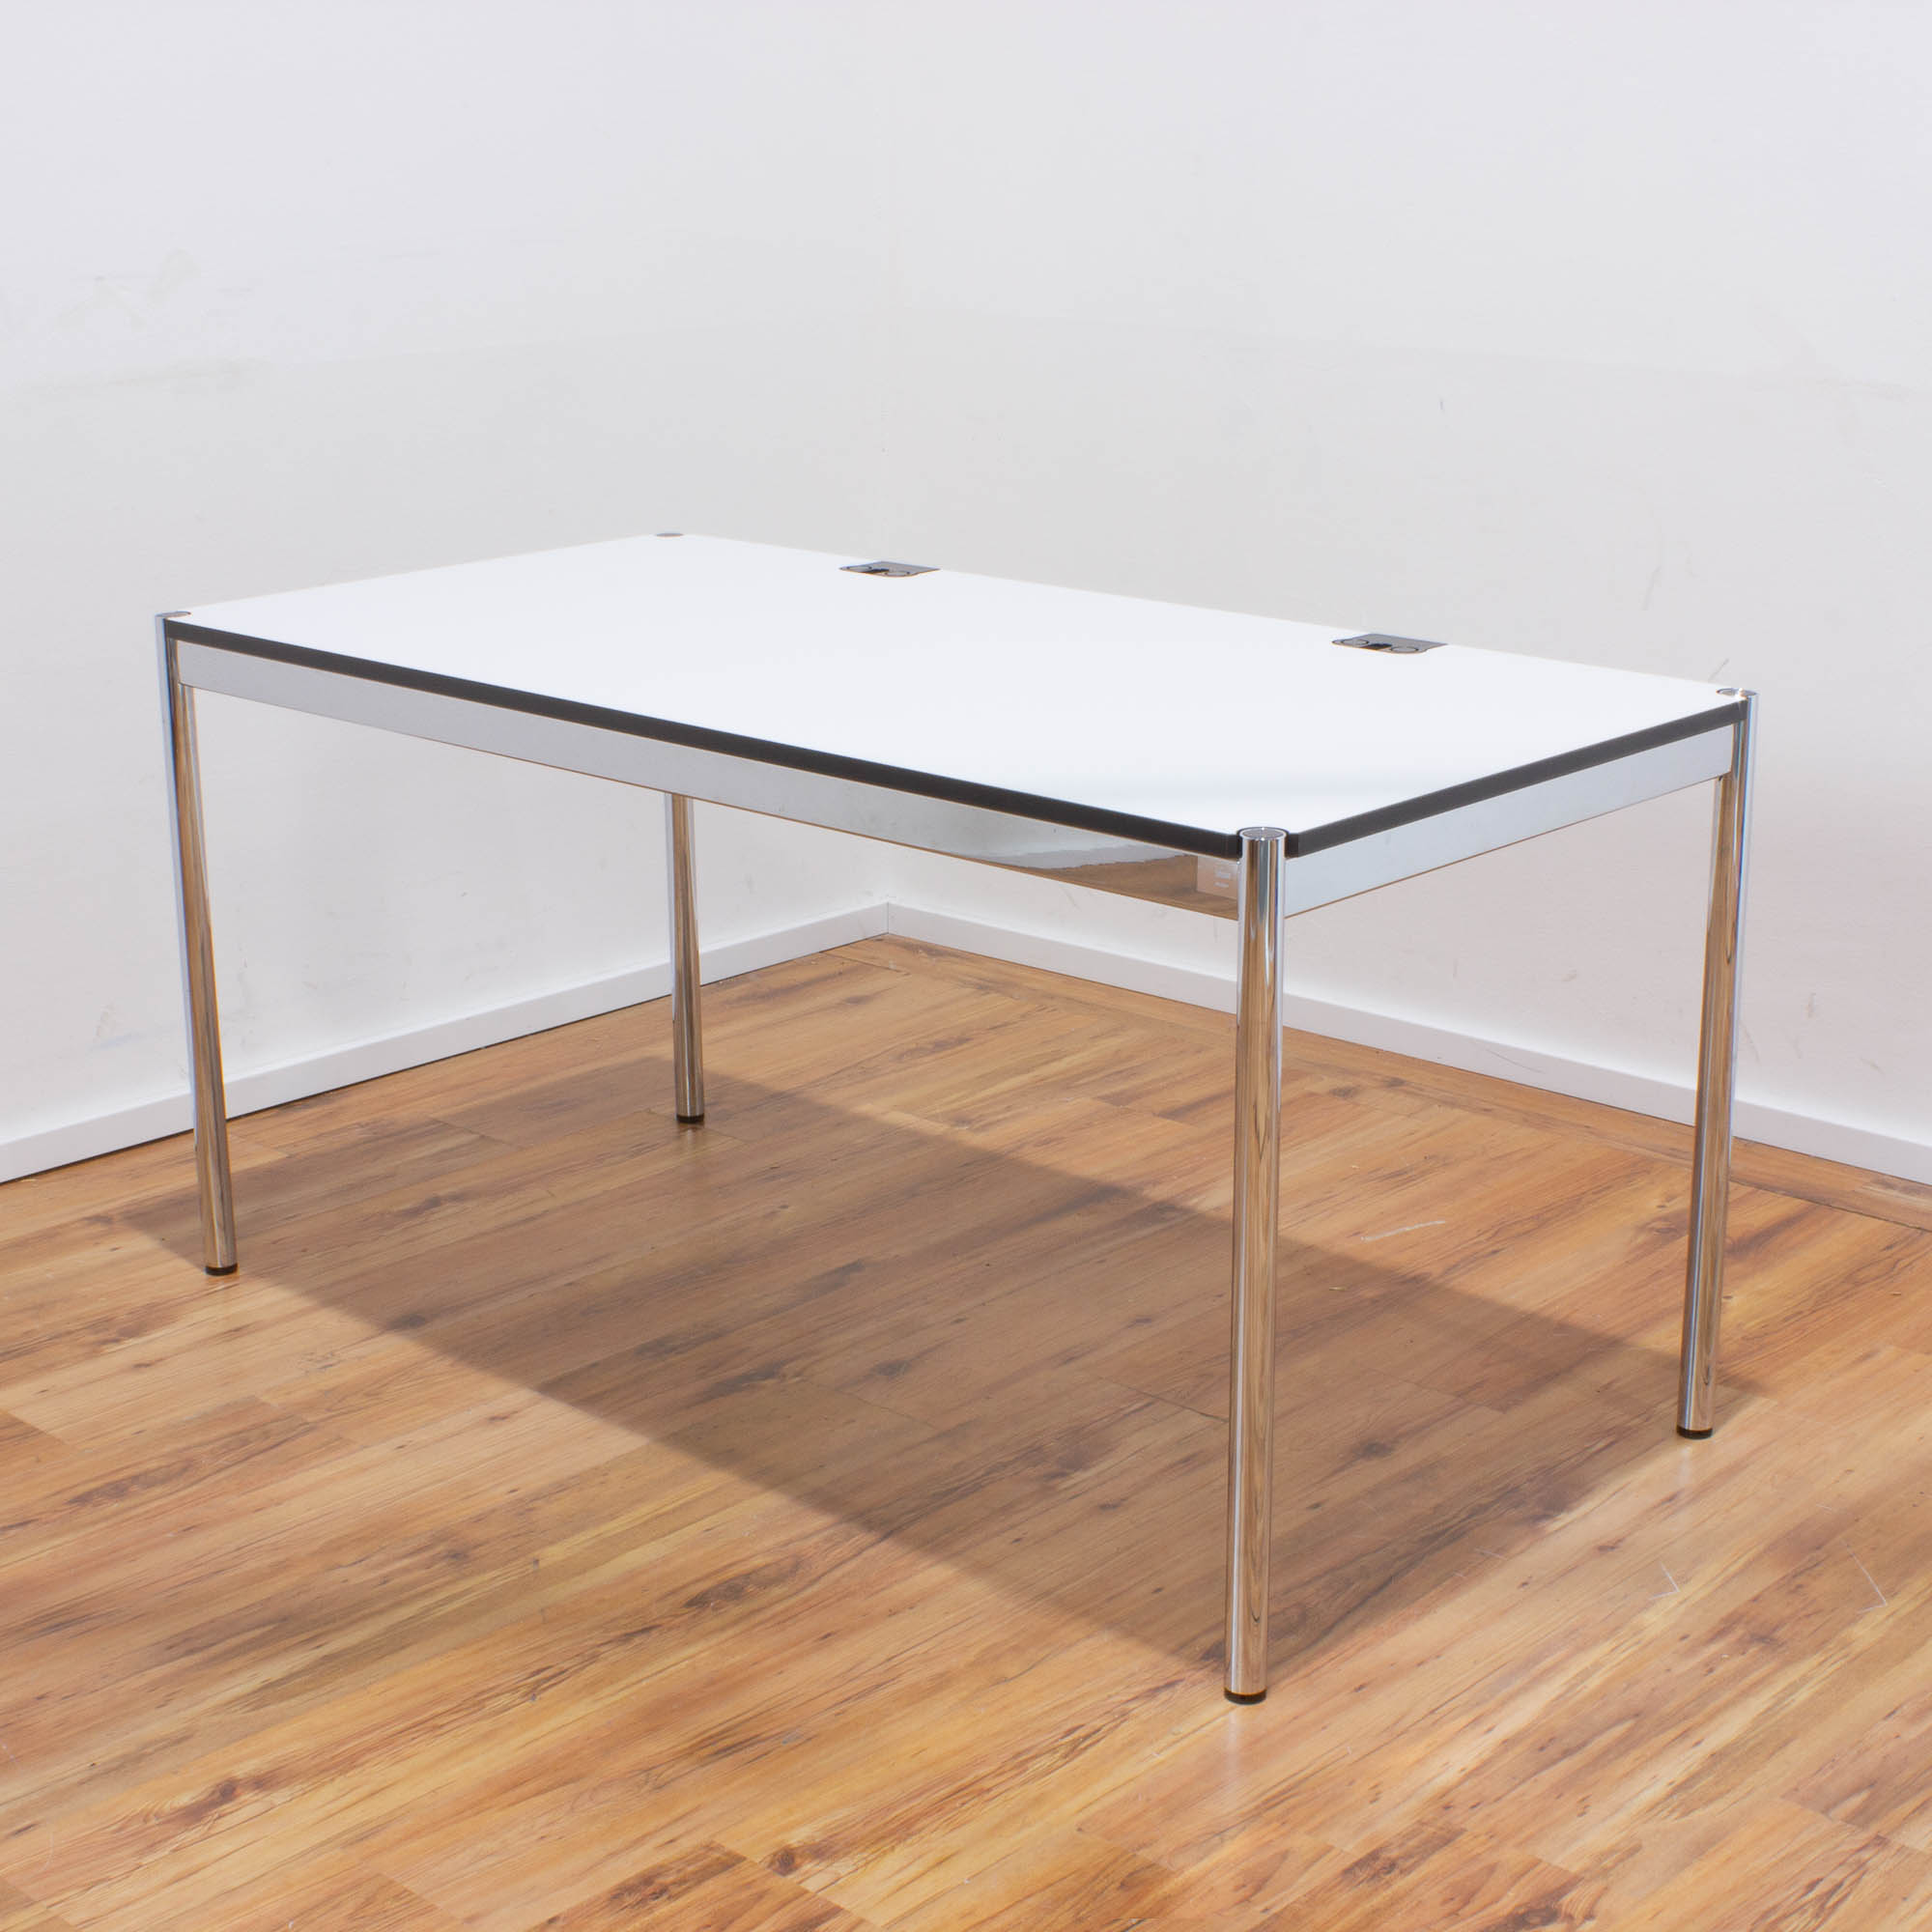 USM Haller Schreibtisch Plus 150x75cm - Tischplatte weiß -Gestell 4-Fuß chrom